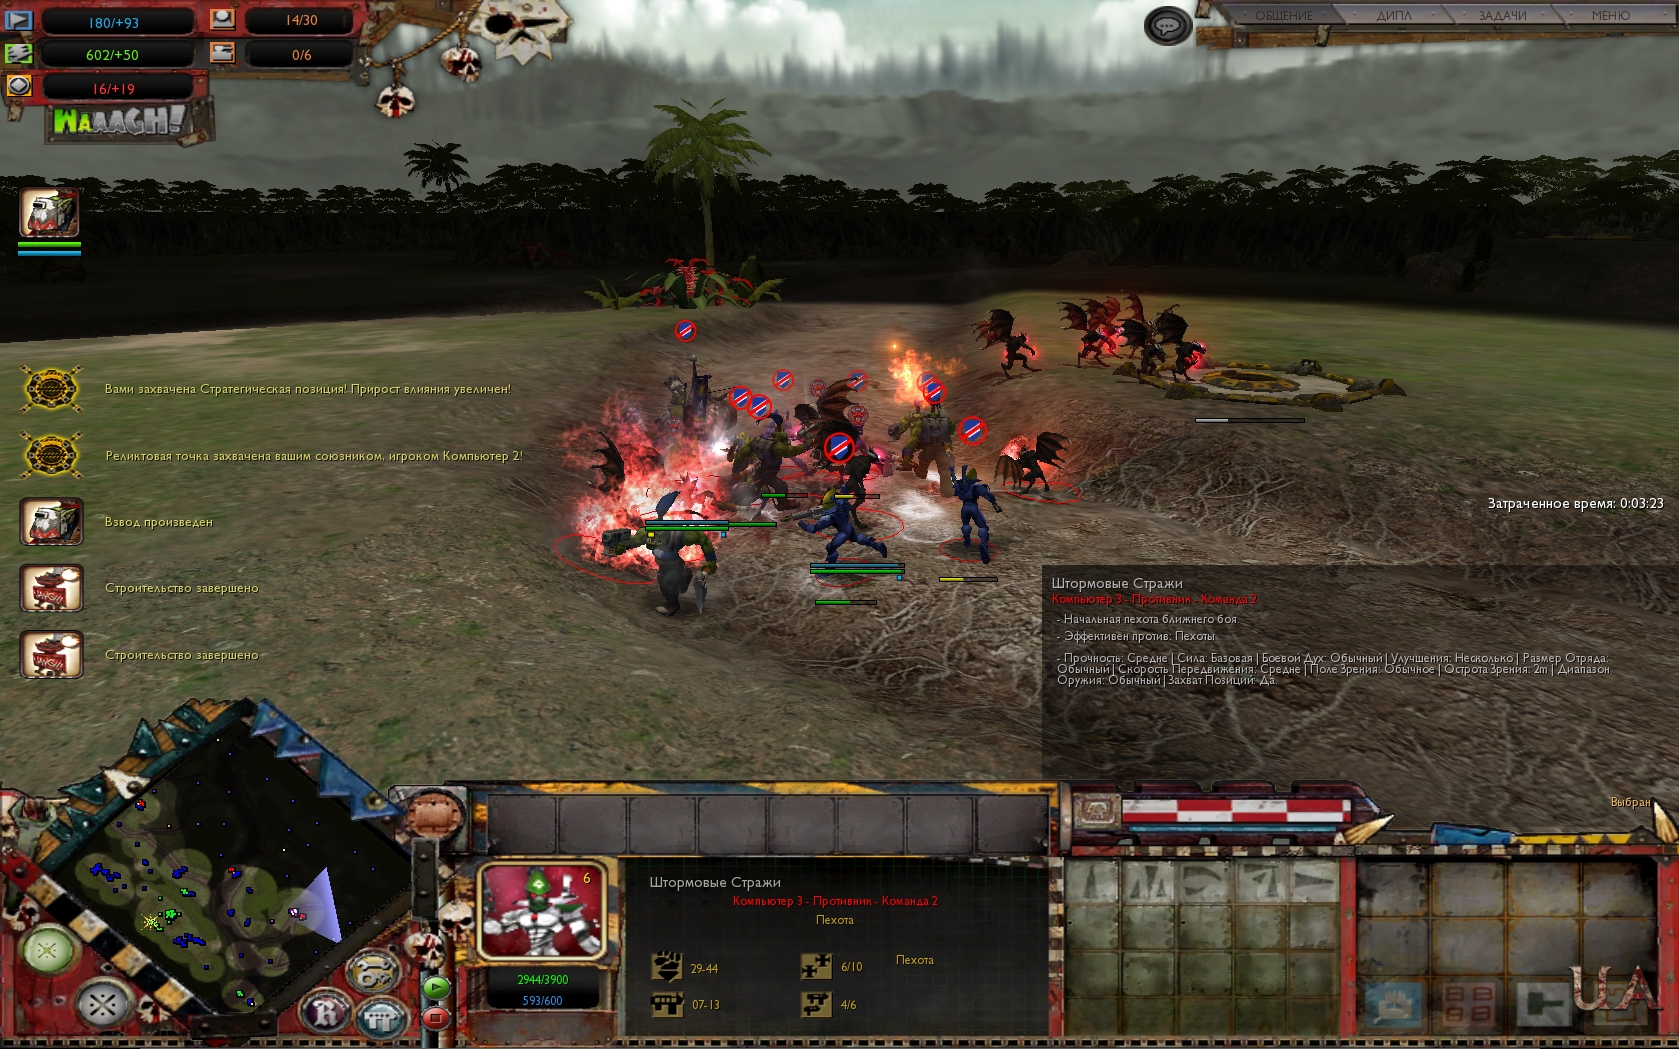 Warhammer 40,000: Dawn of War - Soulstorm Apocalypse mod